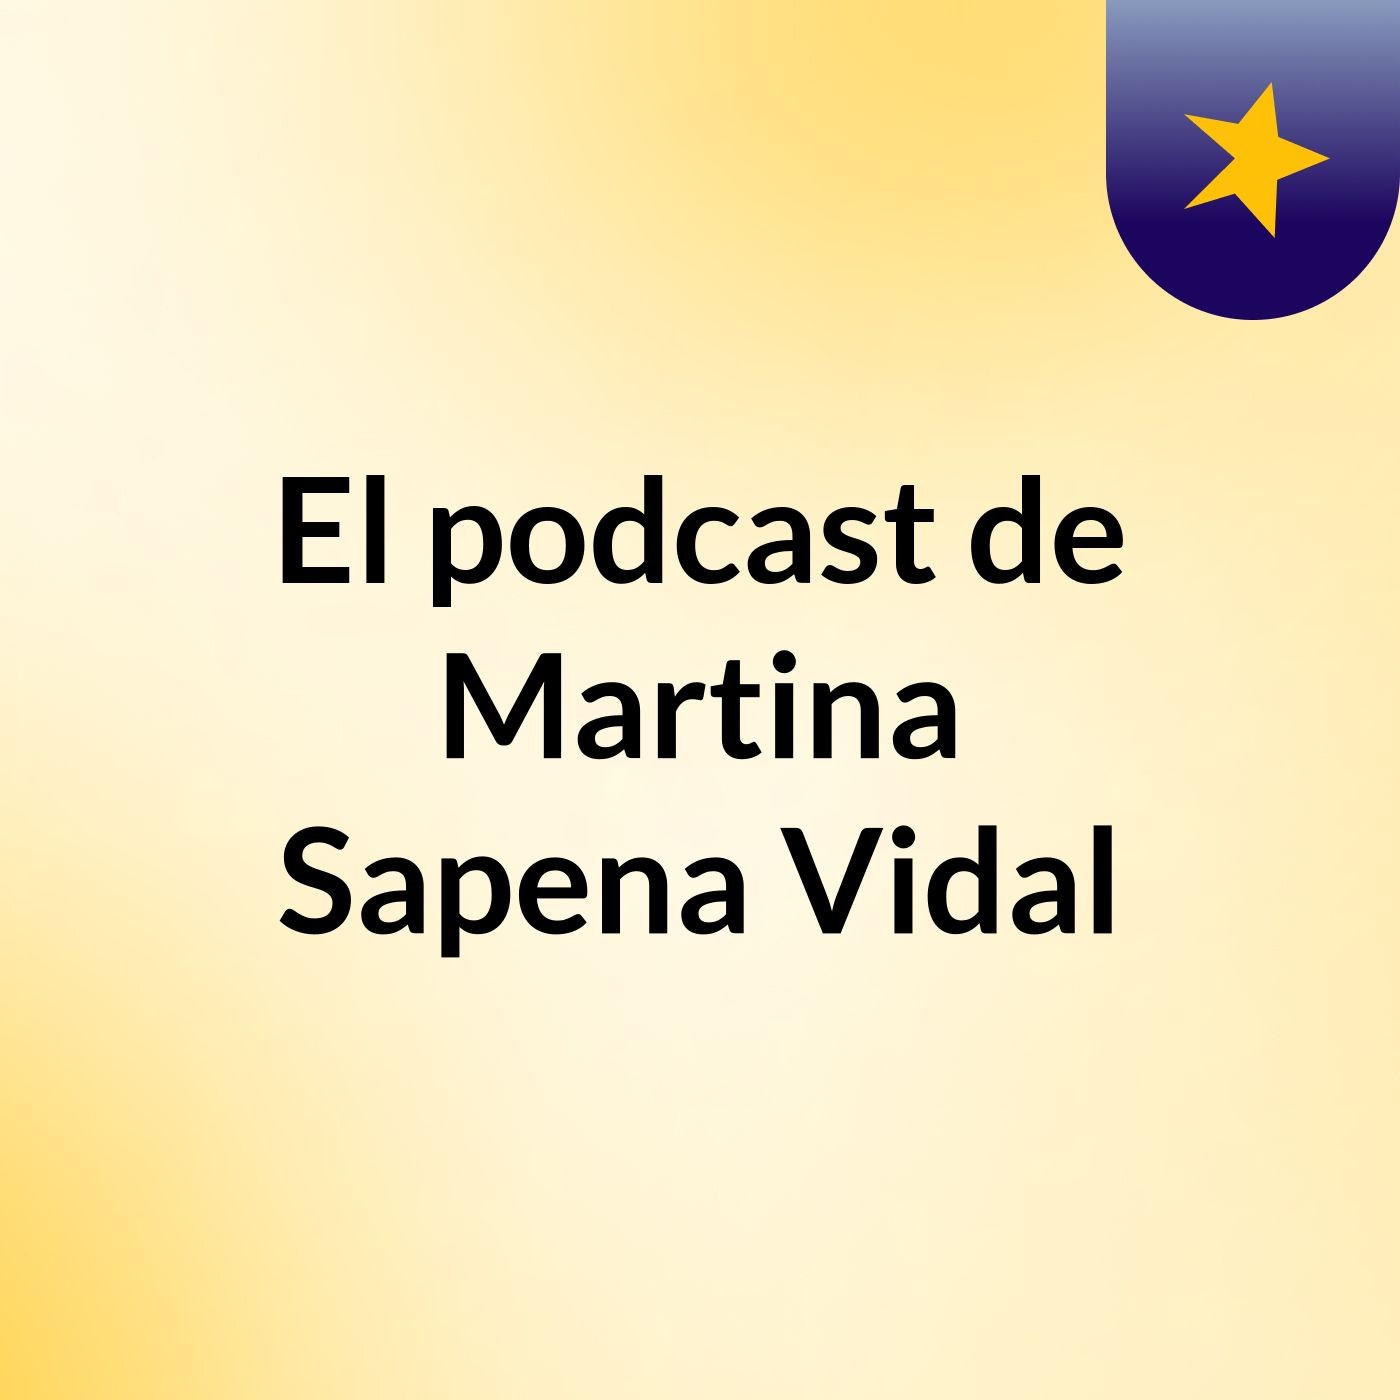 El podcast de Martina Sapena Vidal